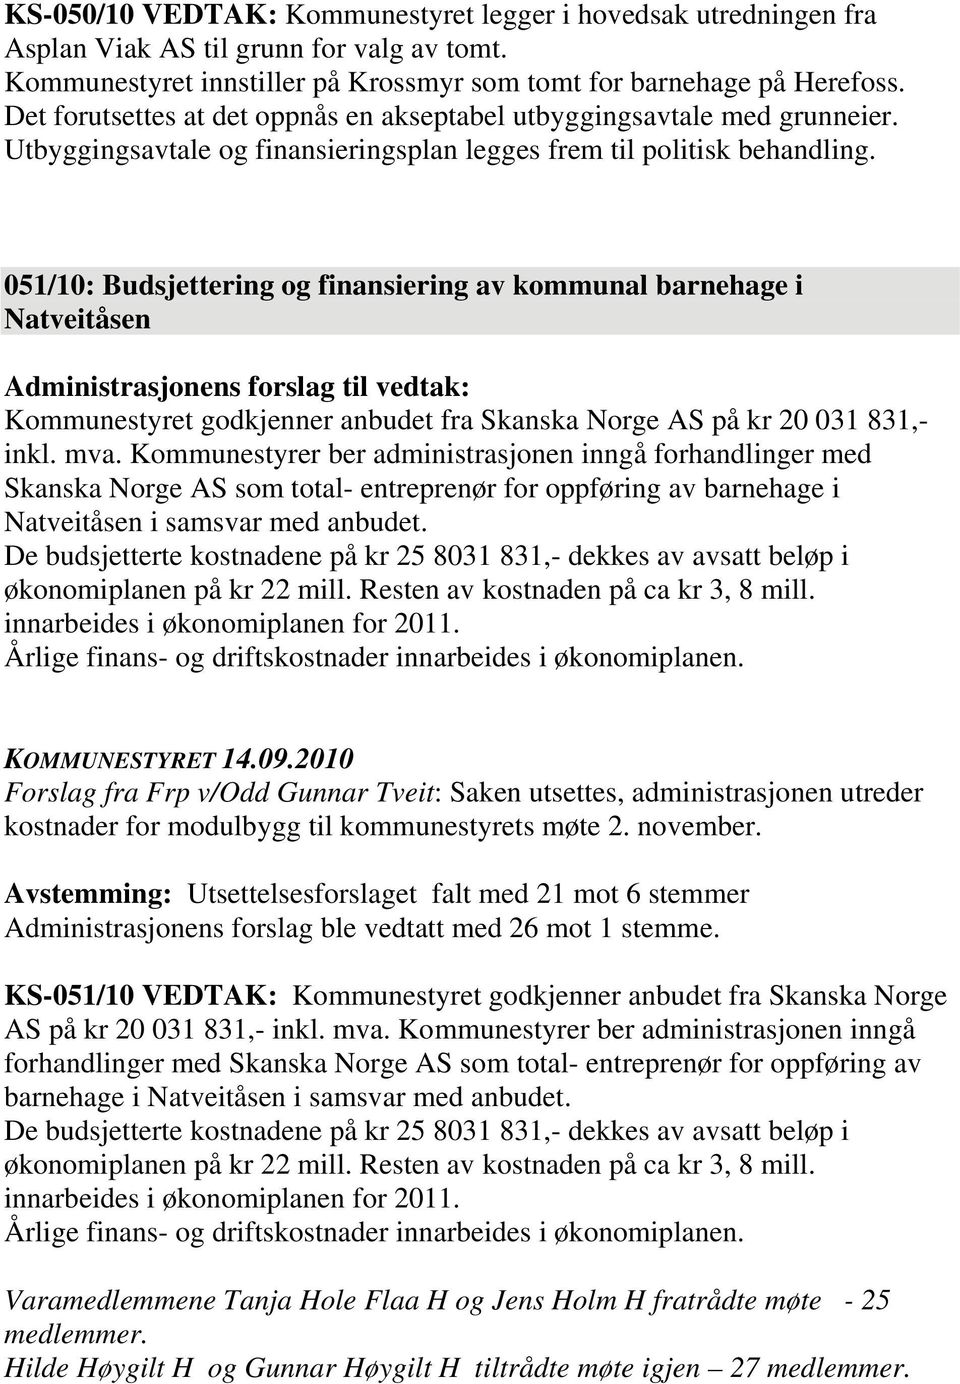 051/10: Budsjettering og finansiering av kommunal barnehage i Natveitåsen Kommunestyret godkjenner anbudet fra Skanska Norge AS på kr 20 031 831,- inkl. mva.